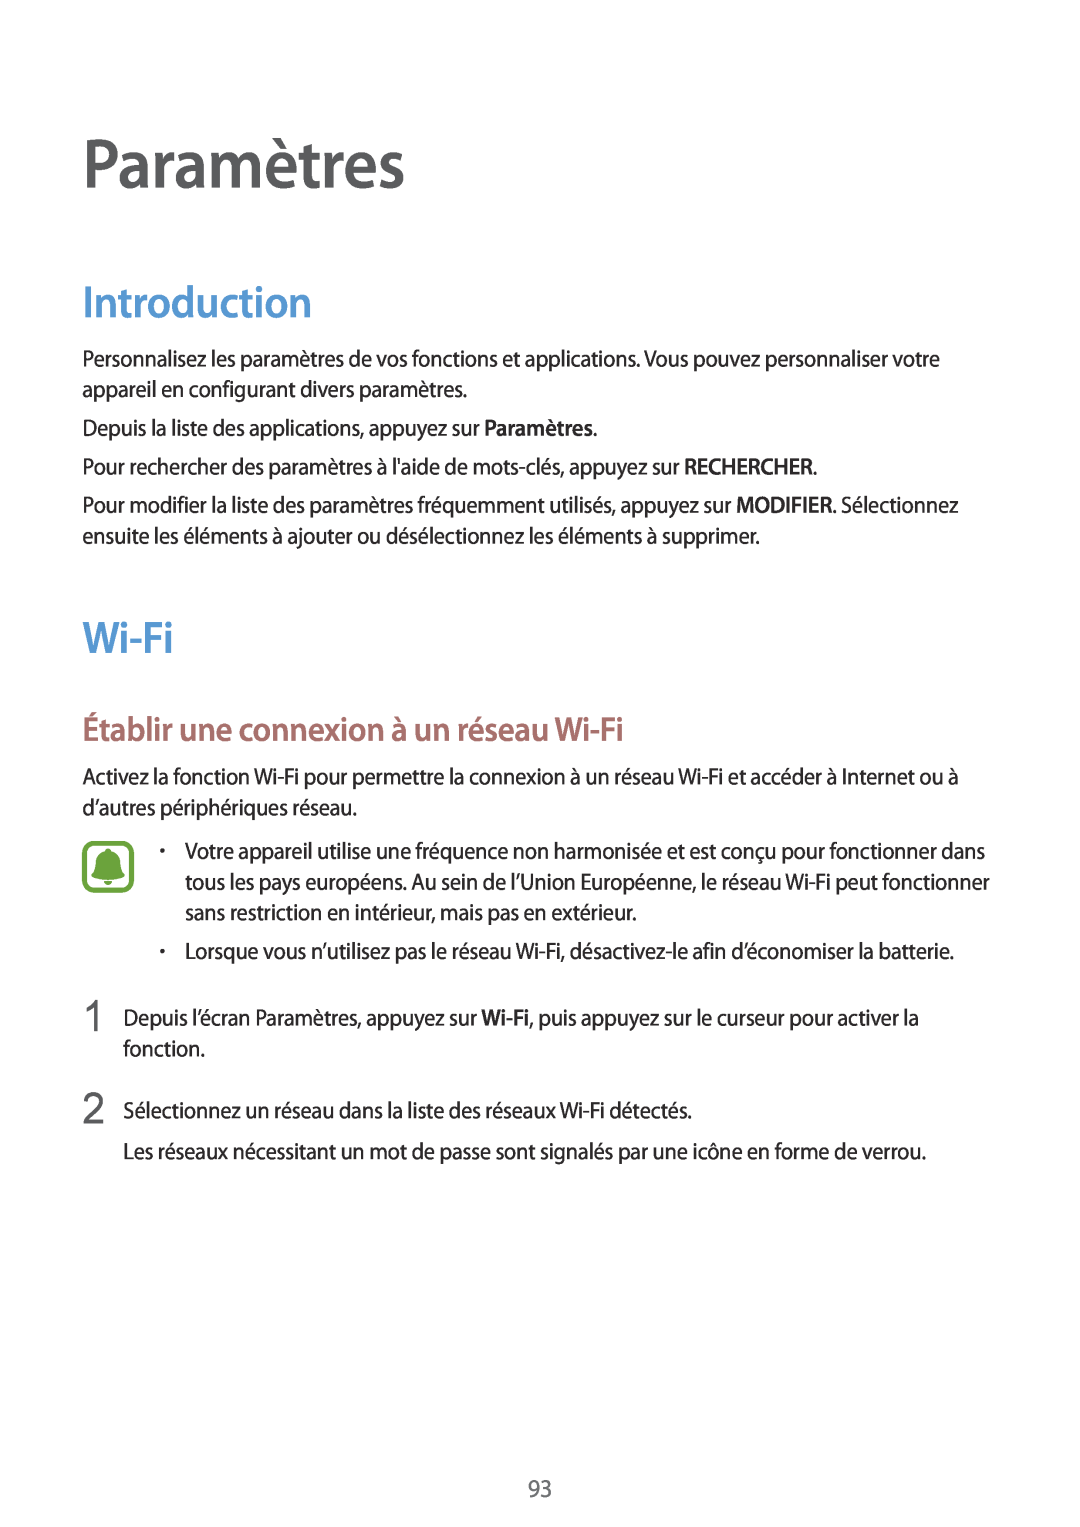 Samsung SM-G920FZKAXEF, SM-G920FZWAXEF manual Paramètres, Introduction, Établir une connexion à un réseau Wi-Fi 